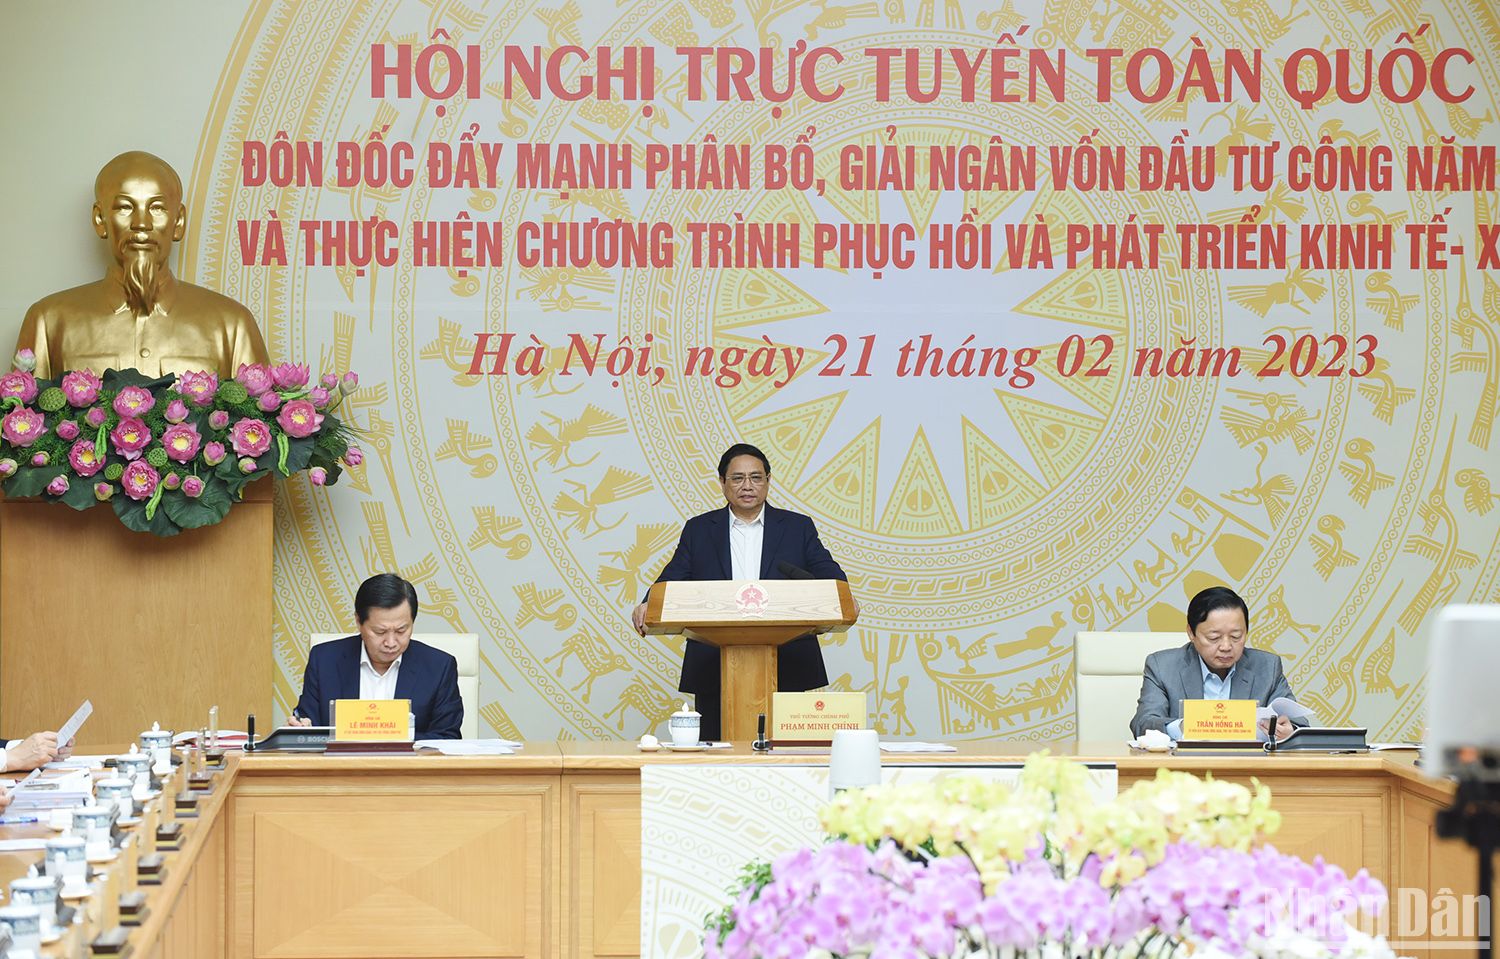 Thủ tướng Phạm Minh Chính chủ trì Hội nghị trực tuyến toàn quốc đôn đốc đẩy mạnh phân bổ, giải ngân vốn đầu tư công và thực hiện Chương trình phục hồi và phát triển kinh tế-xã hội.